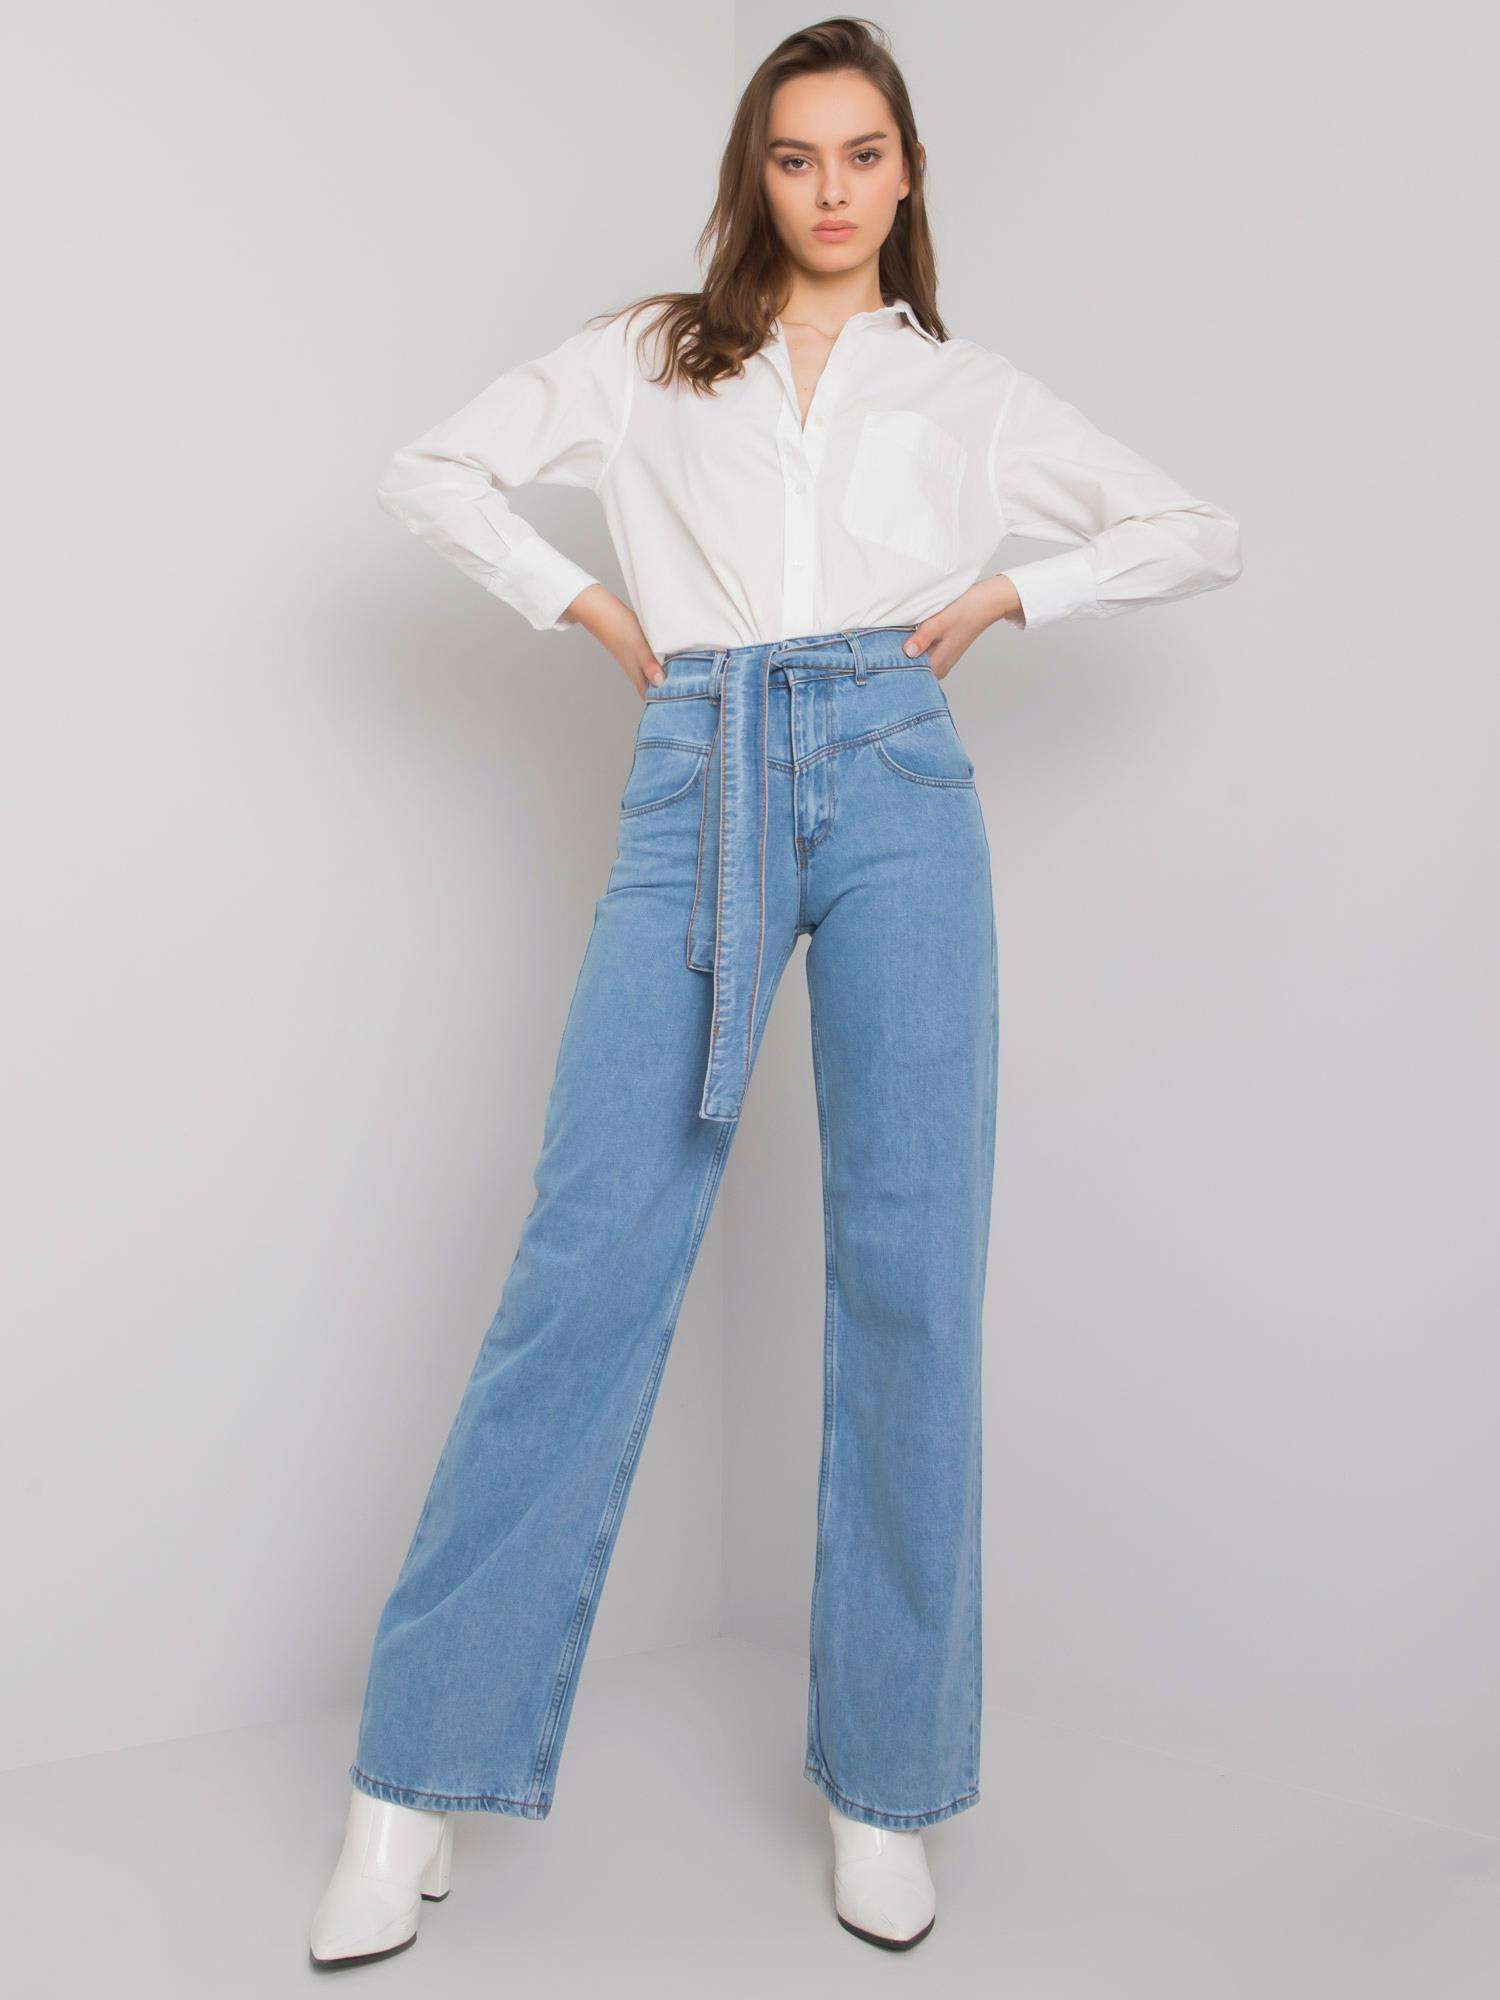 Dámské široké džíny SP-303 Jeans světle modrá - FPrice jeans-sv.modrá 26